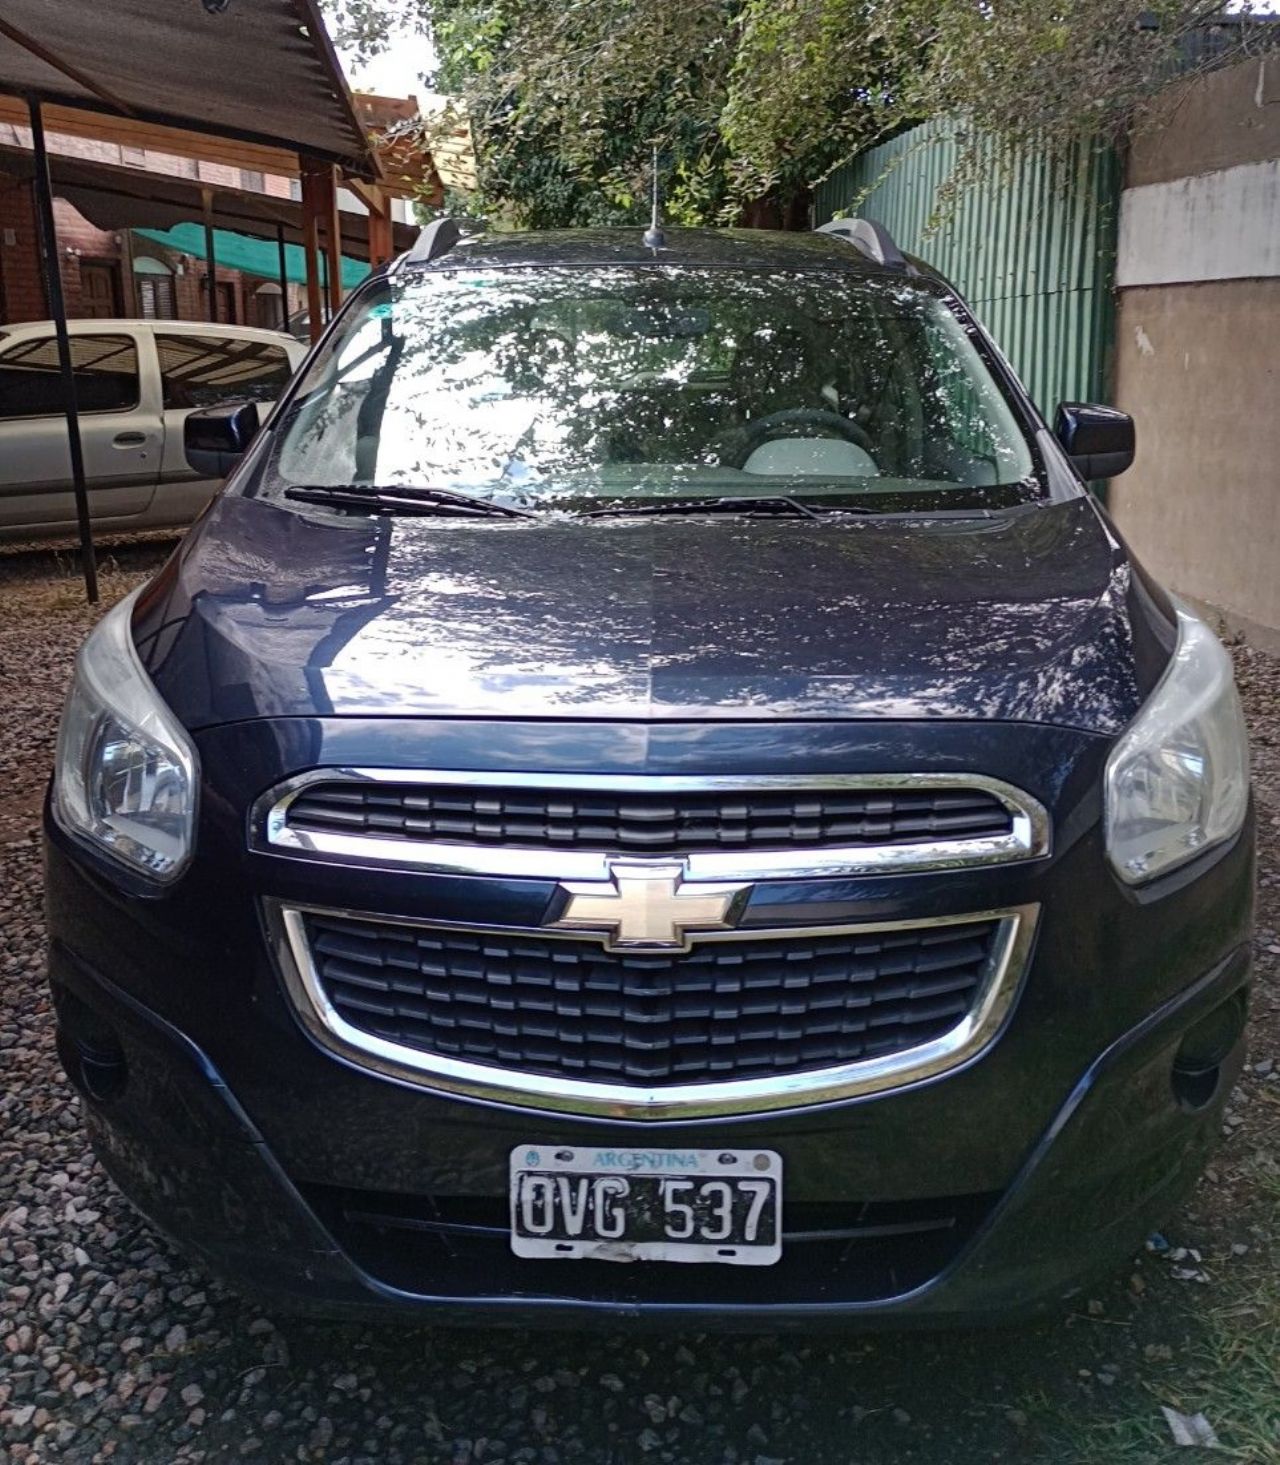 Chevrolet Spin Usado en Córdoba, deRuedas